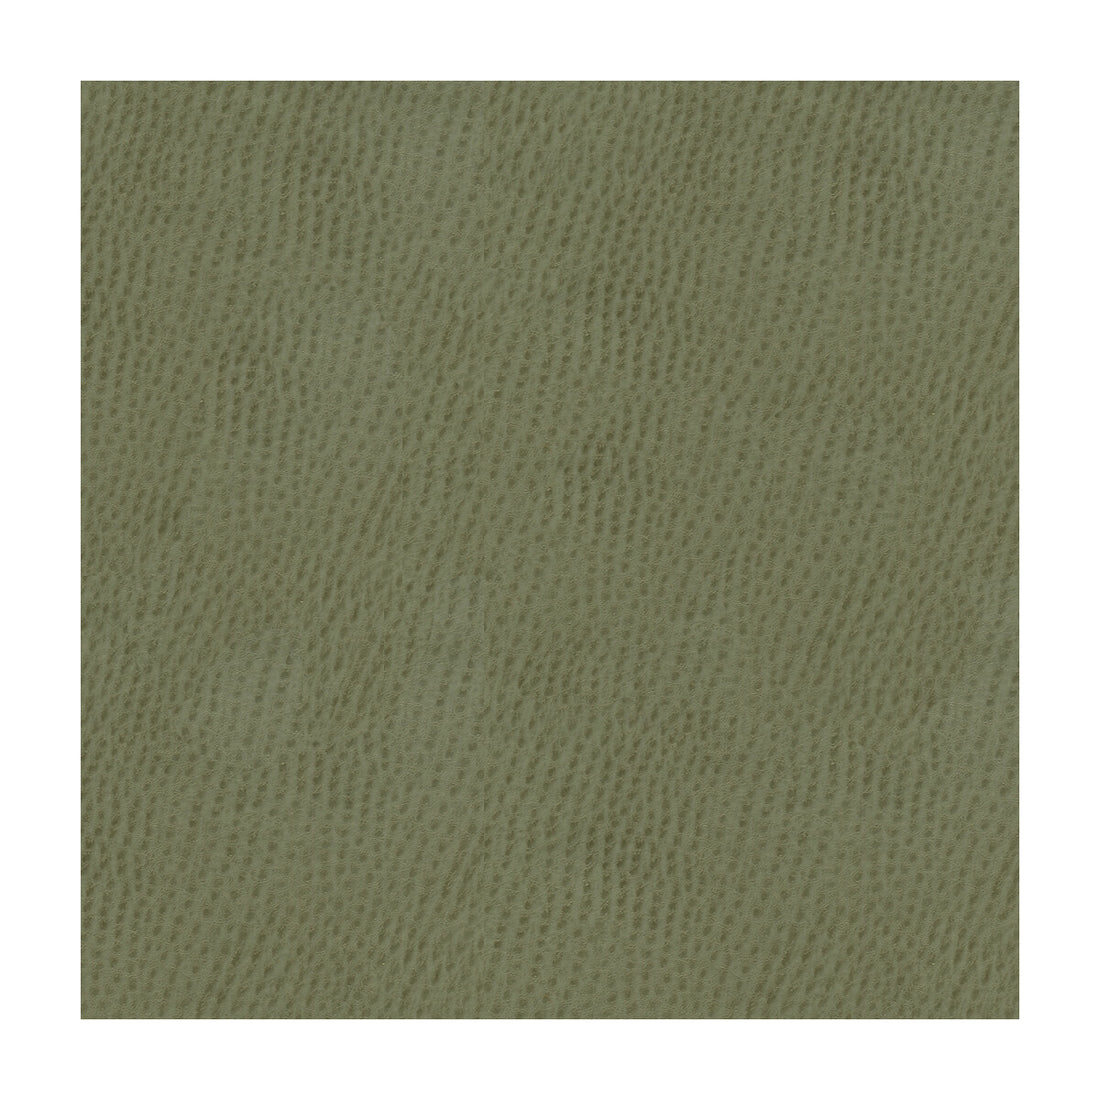 Kravet Smart fabric in ossy-11 color - pattern OSSY.11.0 - by Kravet Smart